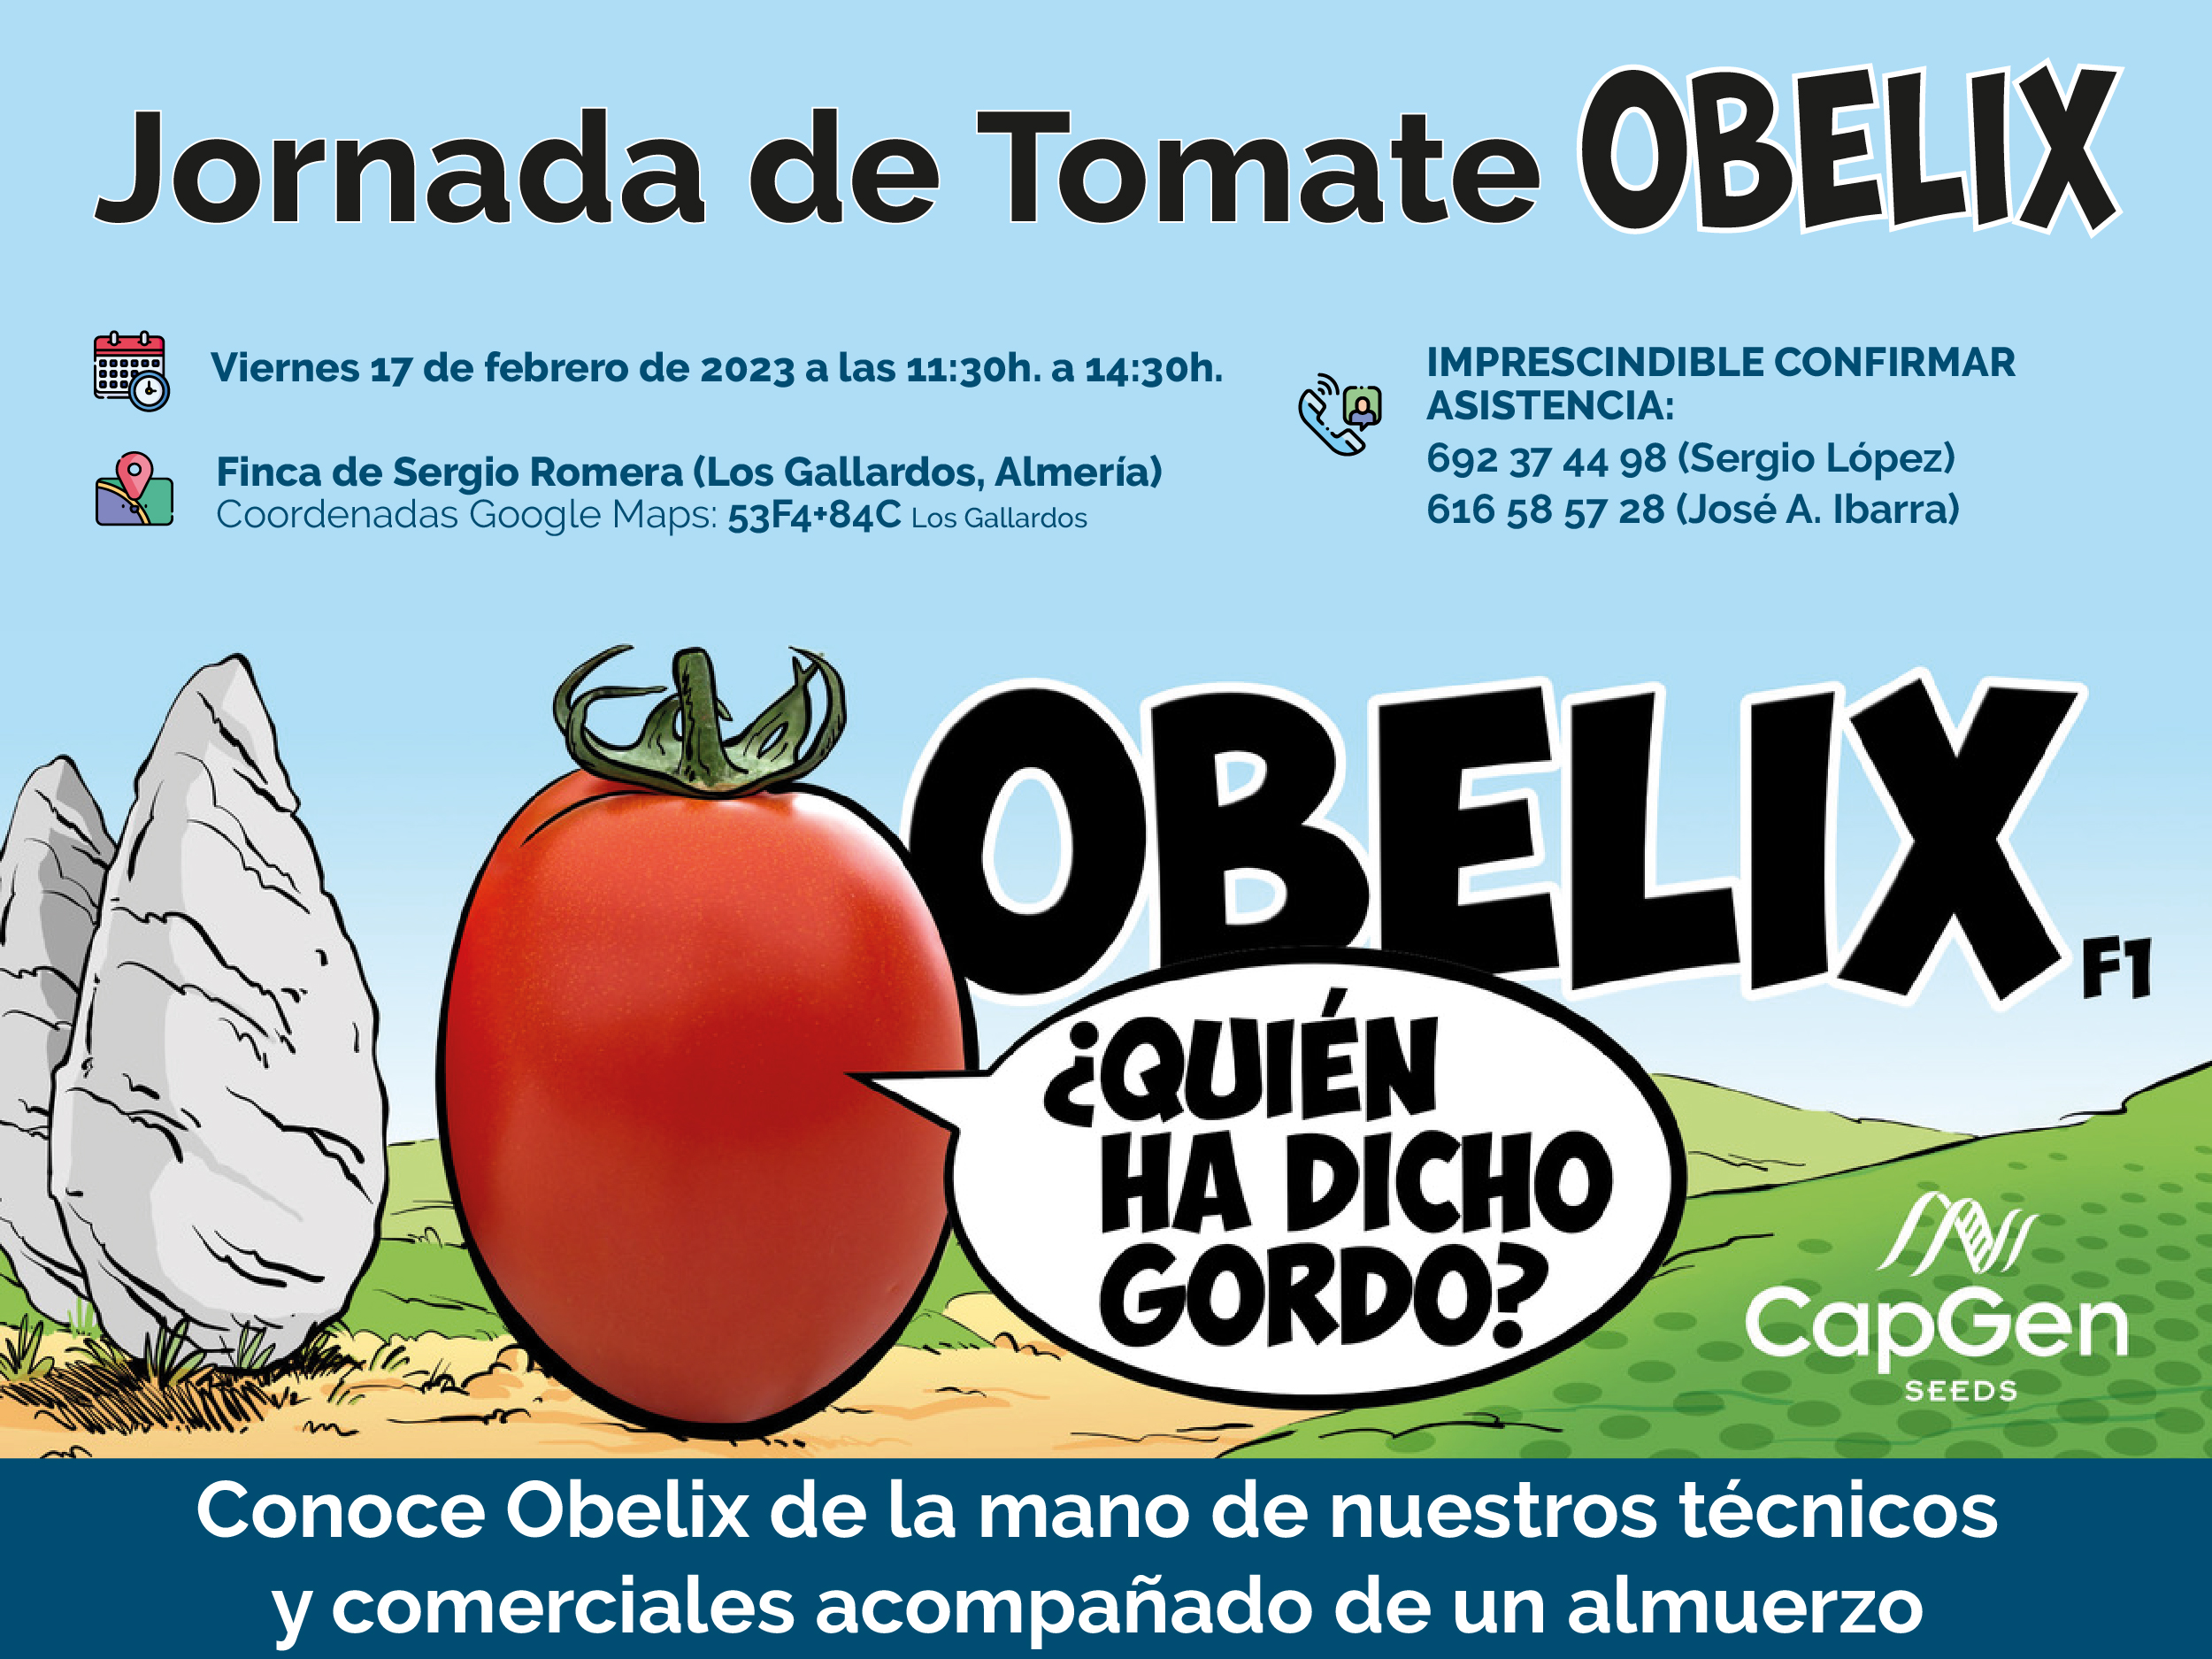 Capgen seeds jornadas obelix vera (banner)